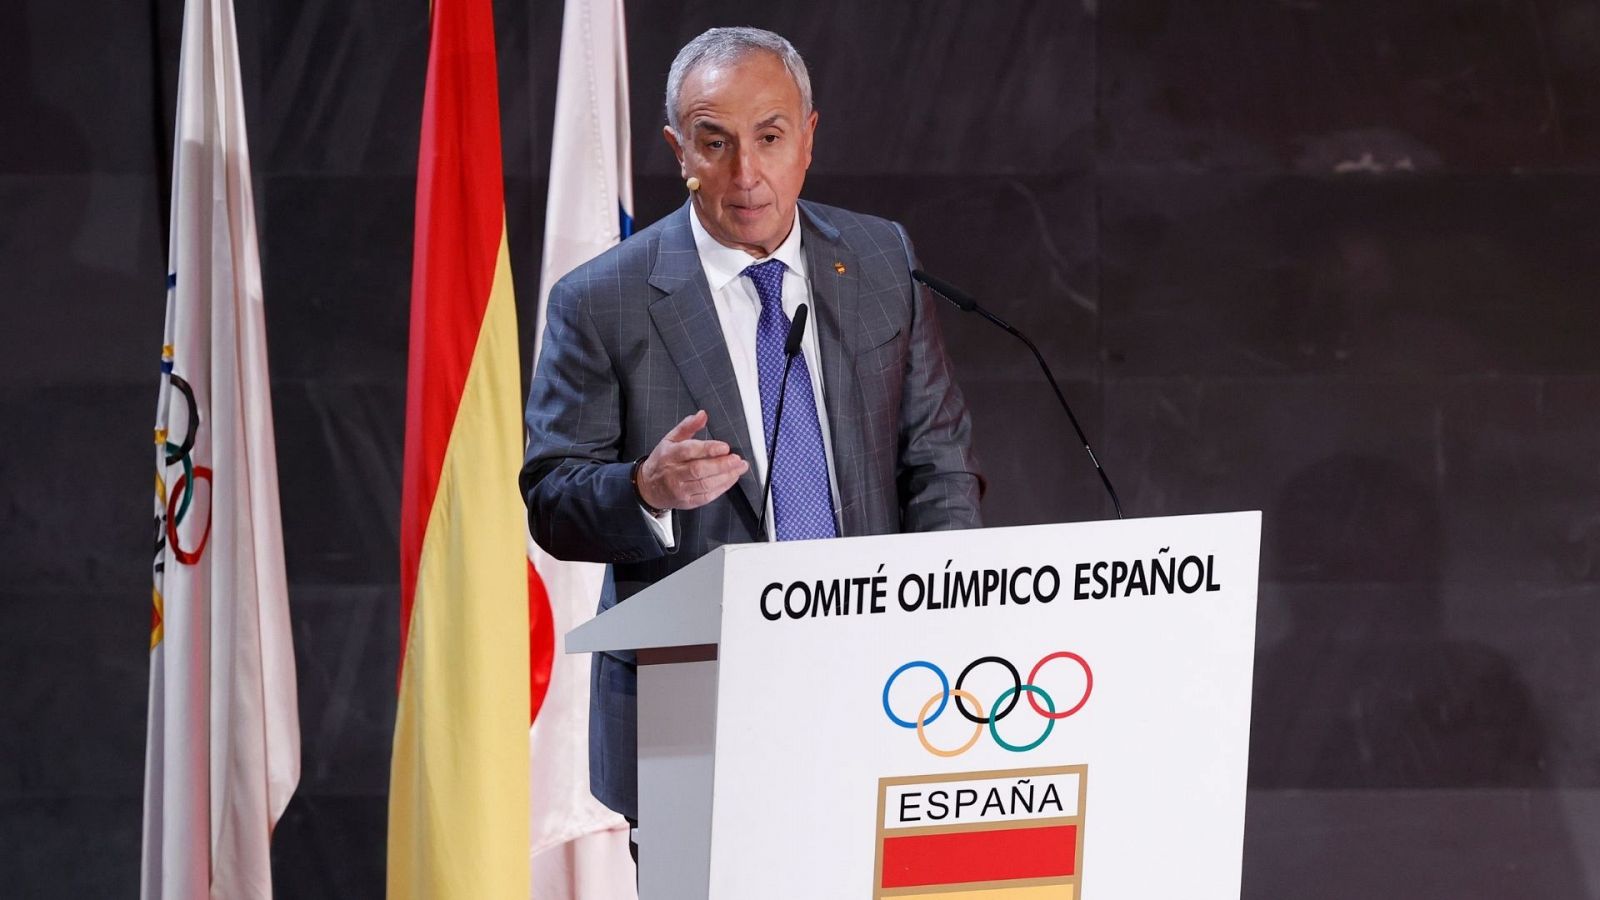 Radiogaceta de los Deportes - Alejandro Blanco: "El deporte es mucho más que el resultado" - Escuchar ahora